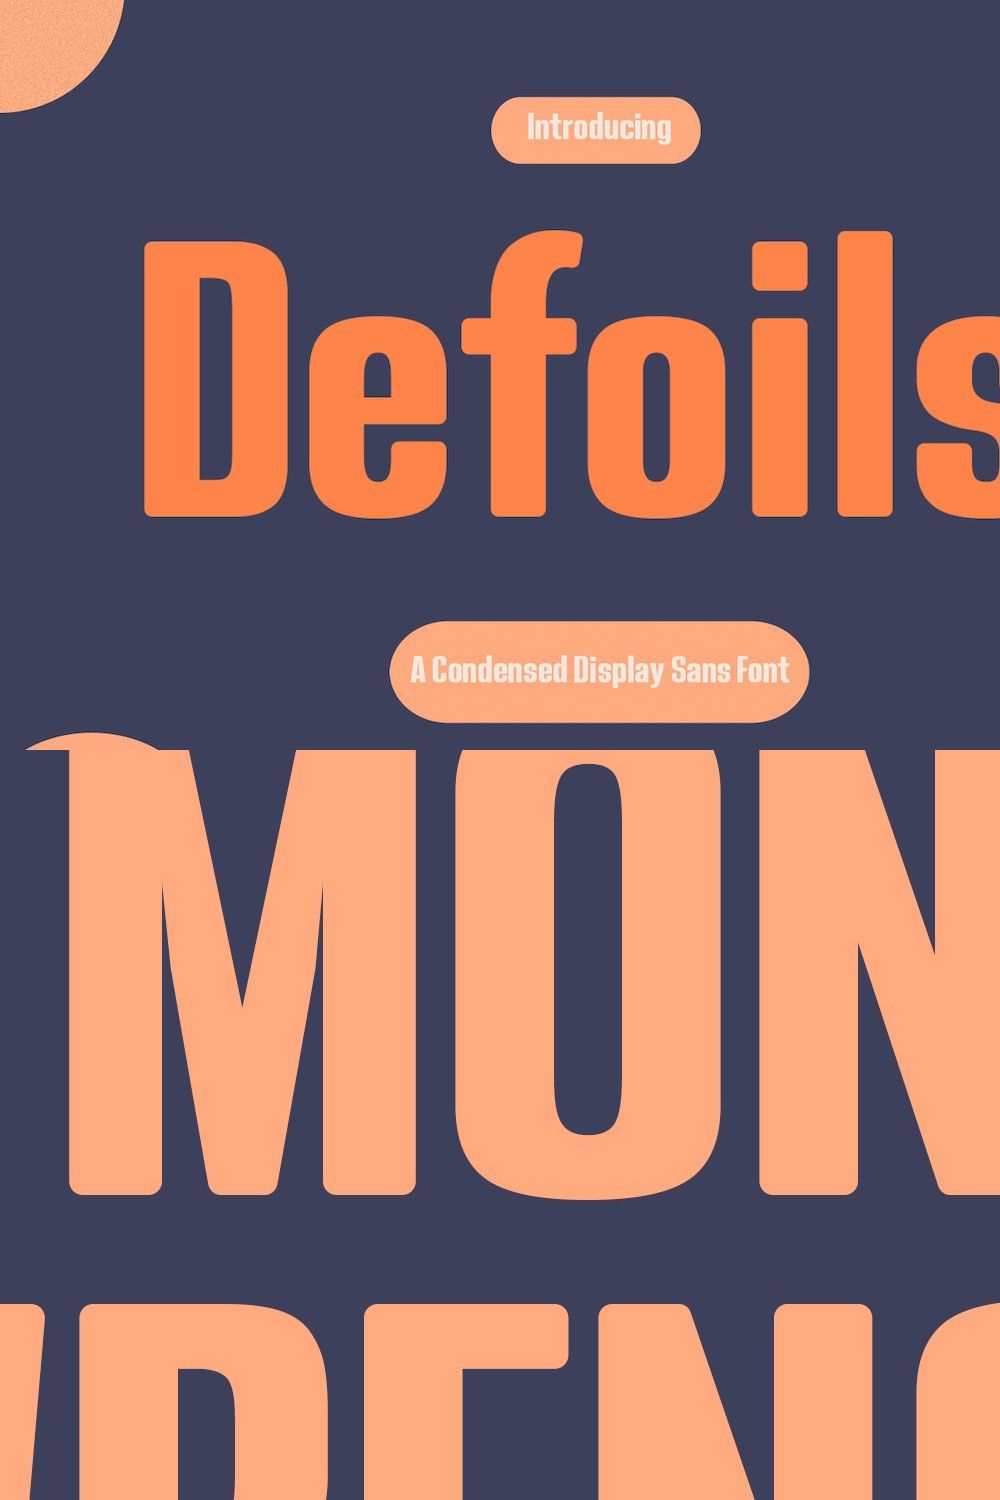 Defoils Luxury Sans Display Font pinterest preview image.